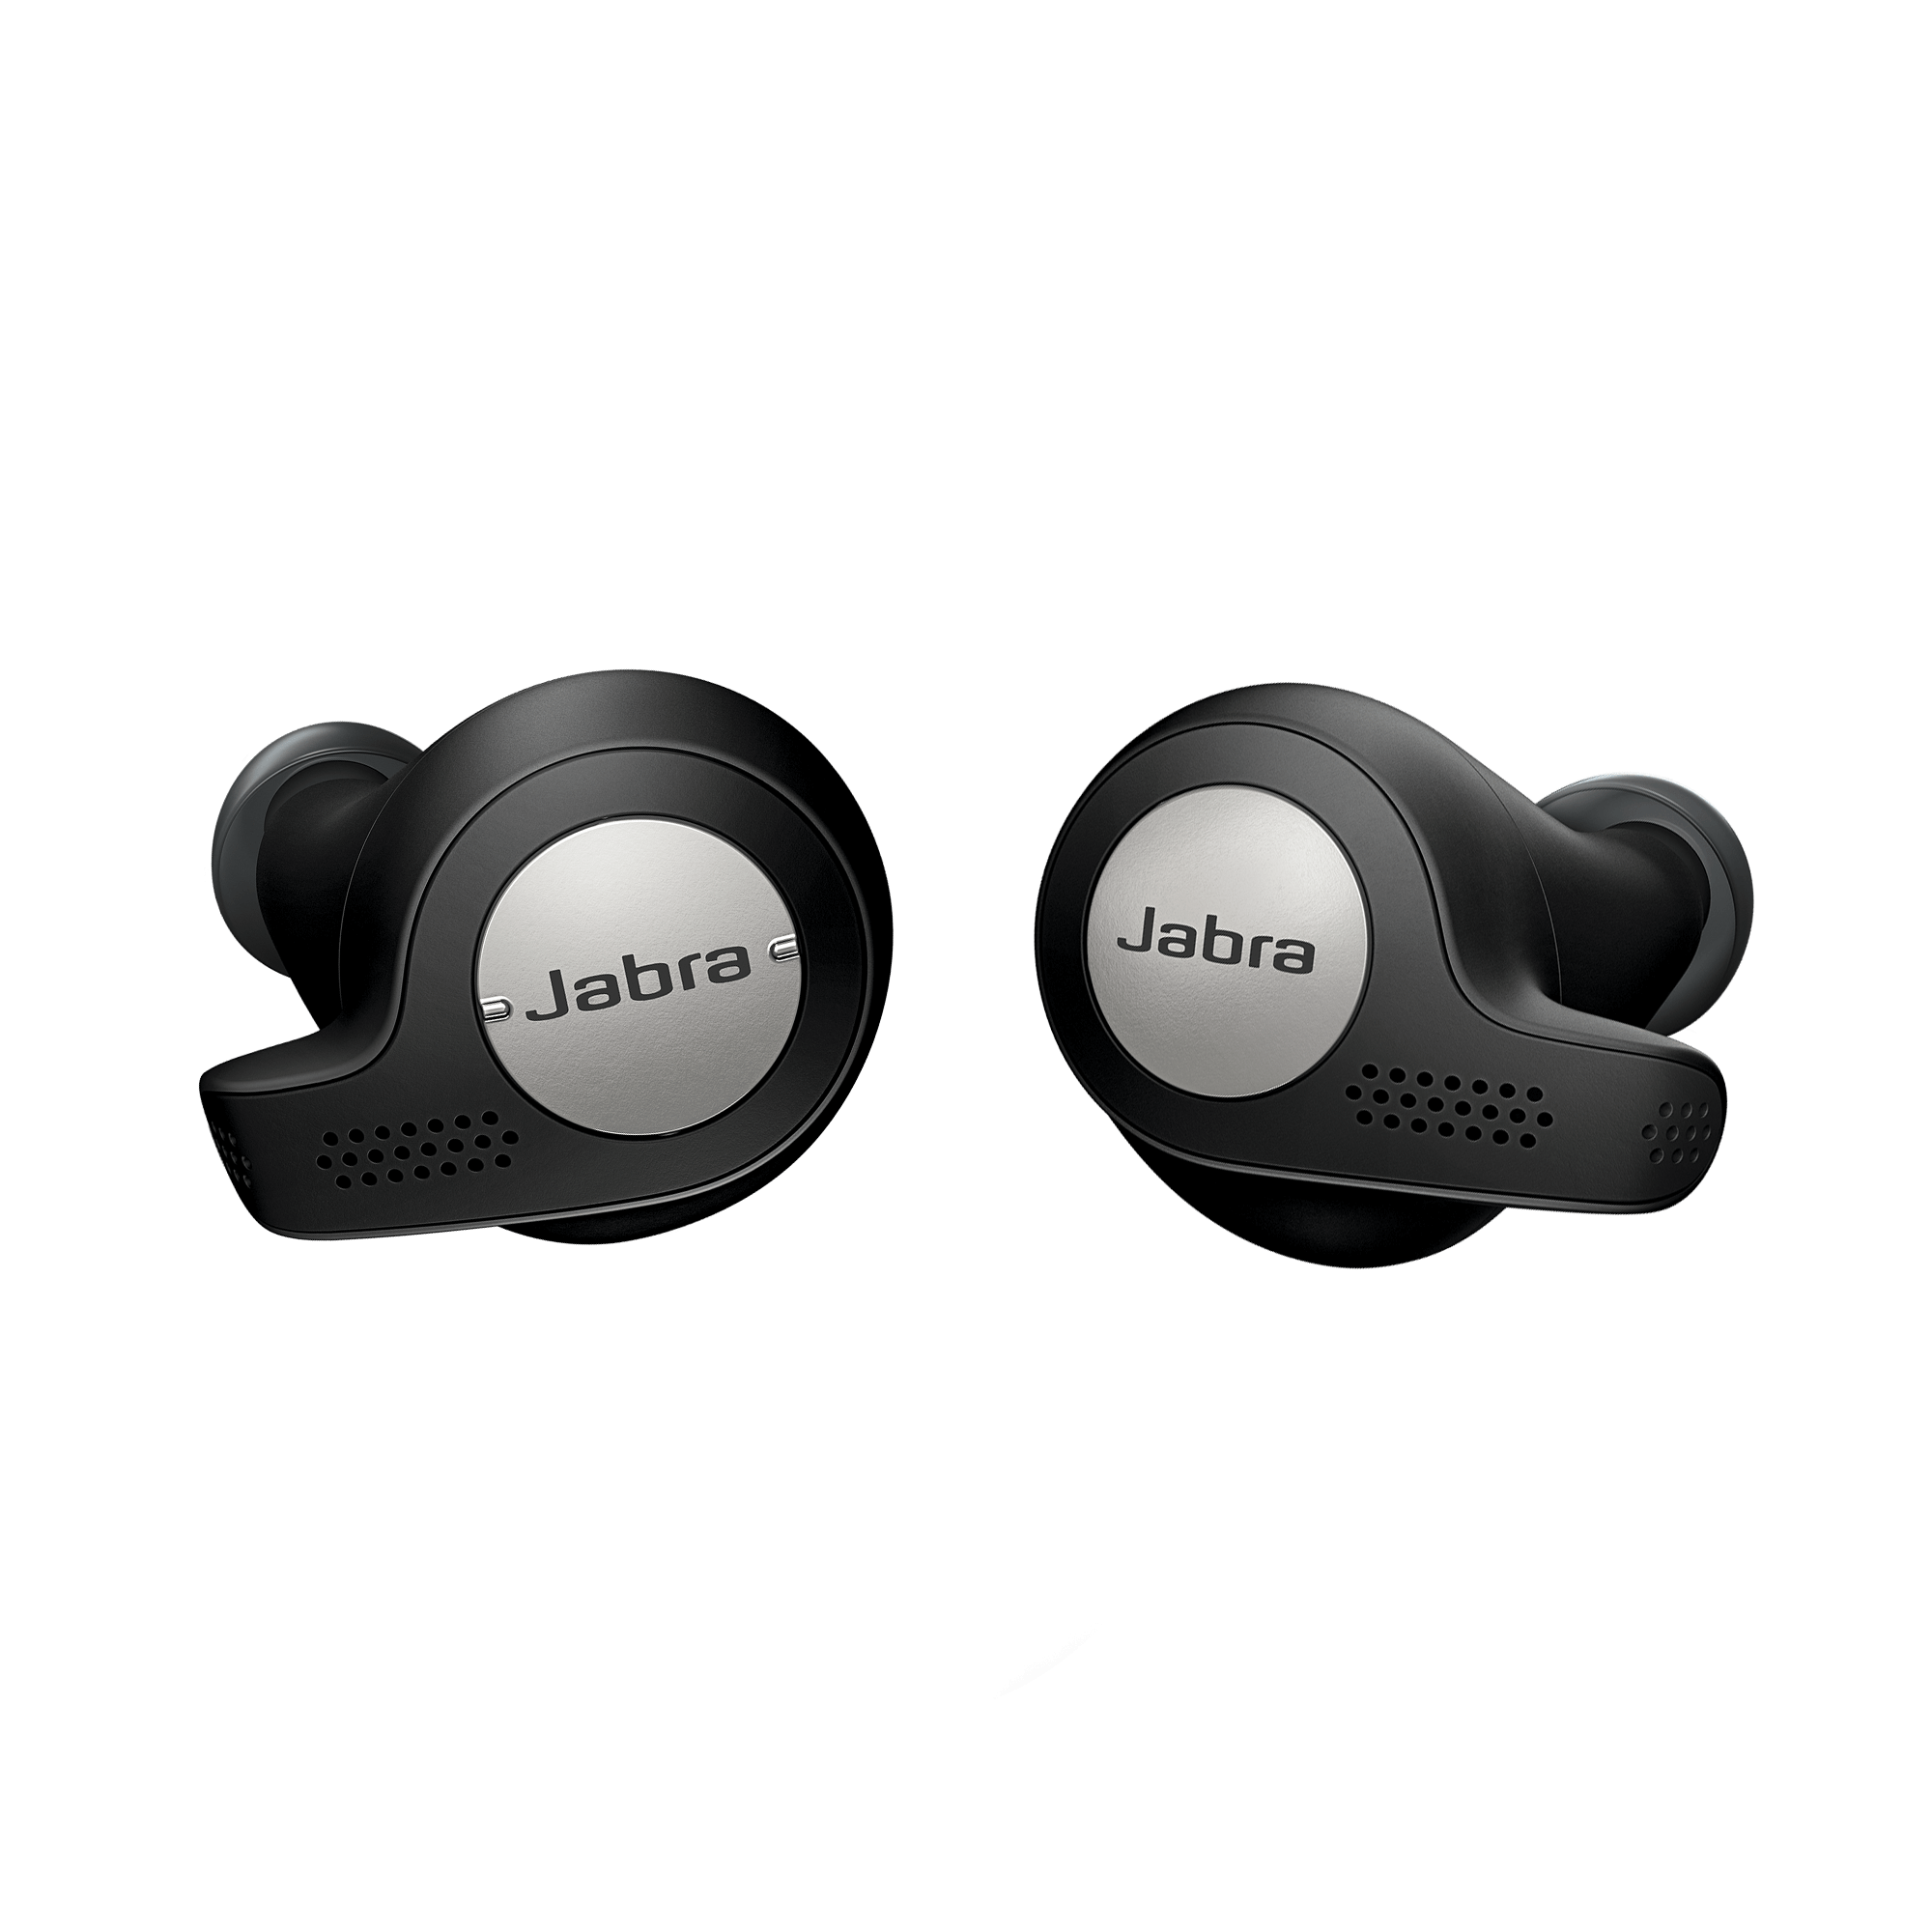 【Jabra】Elite Active 65t 黑色 真無線藍牙耳機 防塵防水★送收納盒★